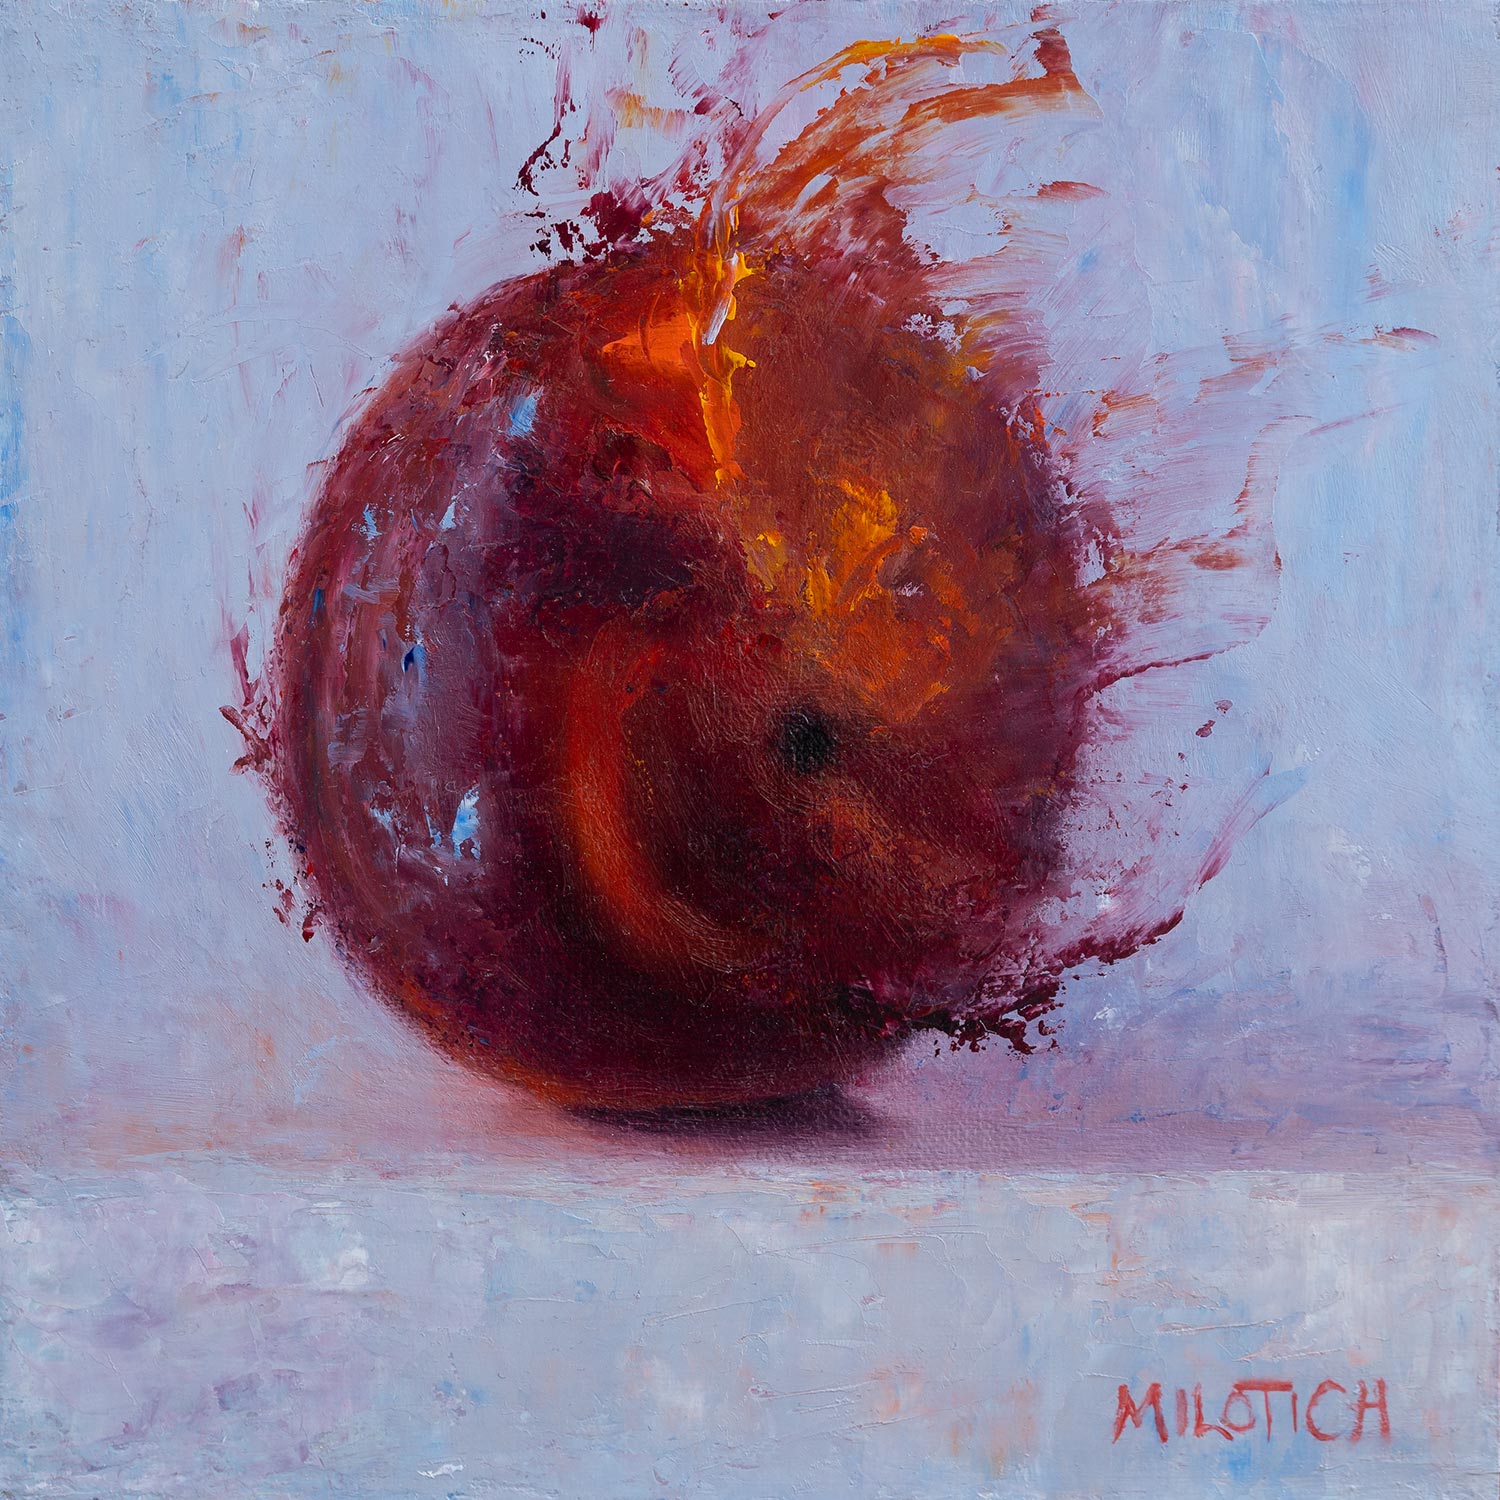 Wild Peach, ein originales Ölbild von Ute Milotich